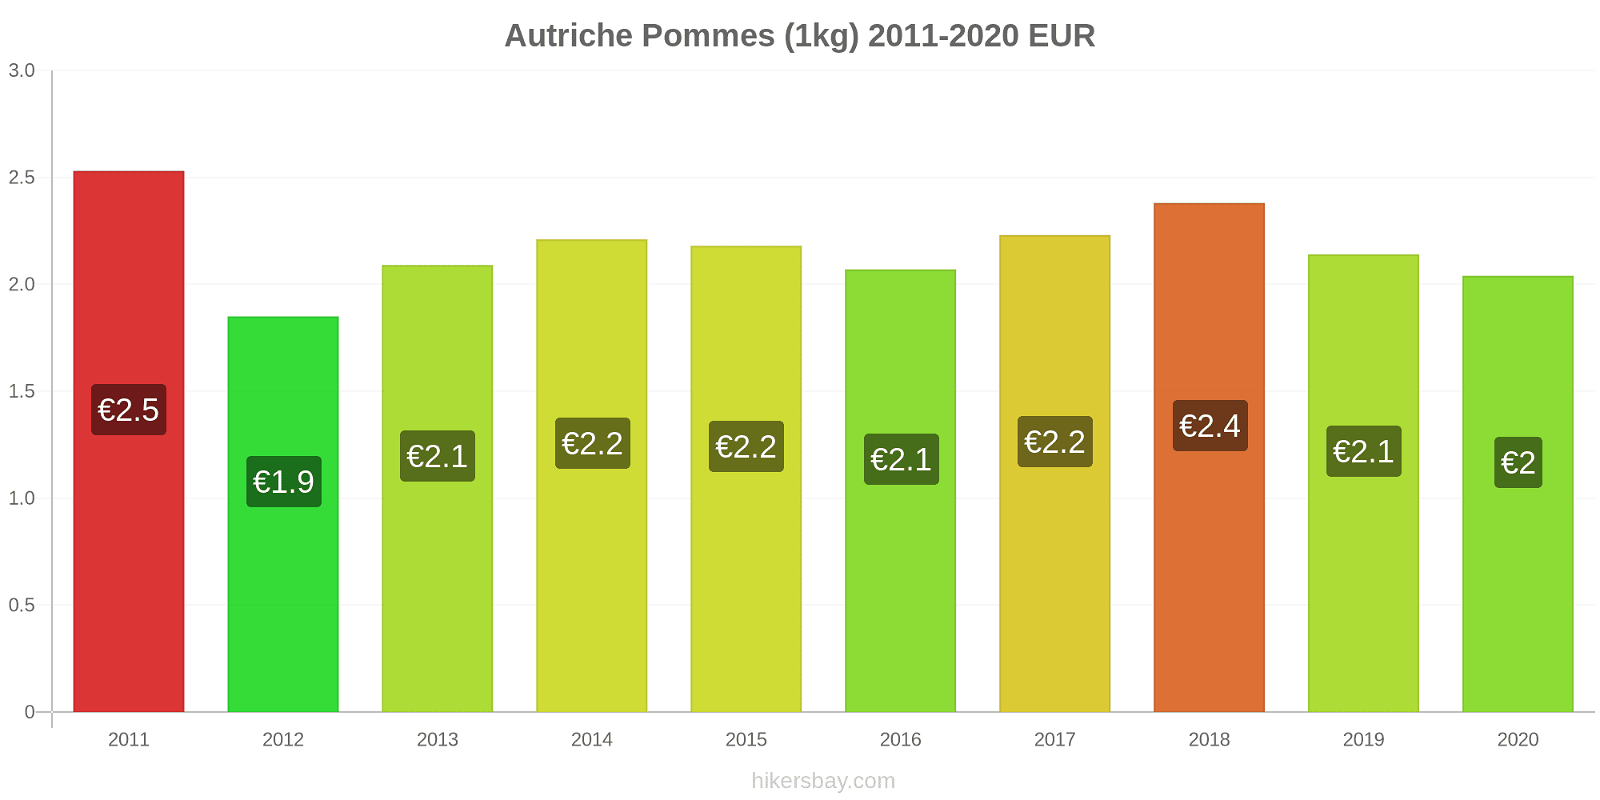 Autriche changements de prix Pommes (1kg) hikersbay.com